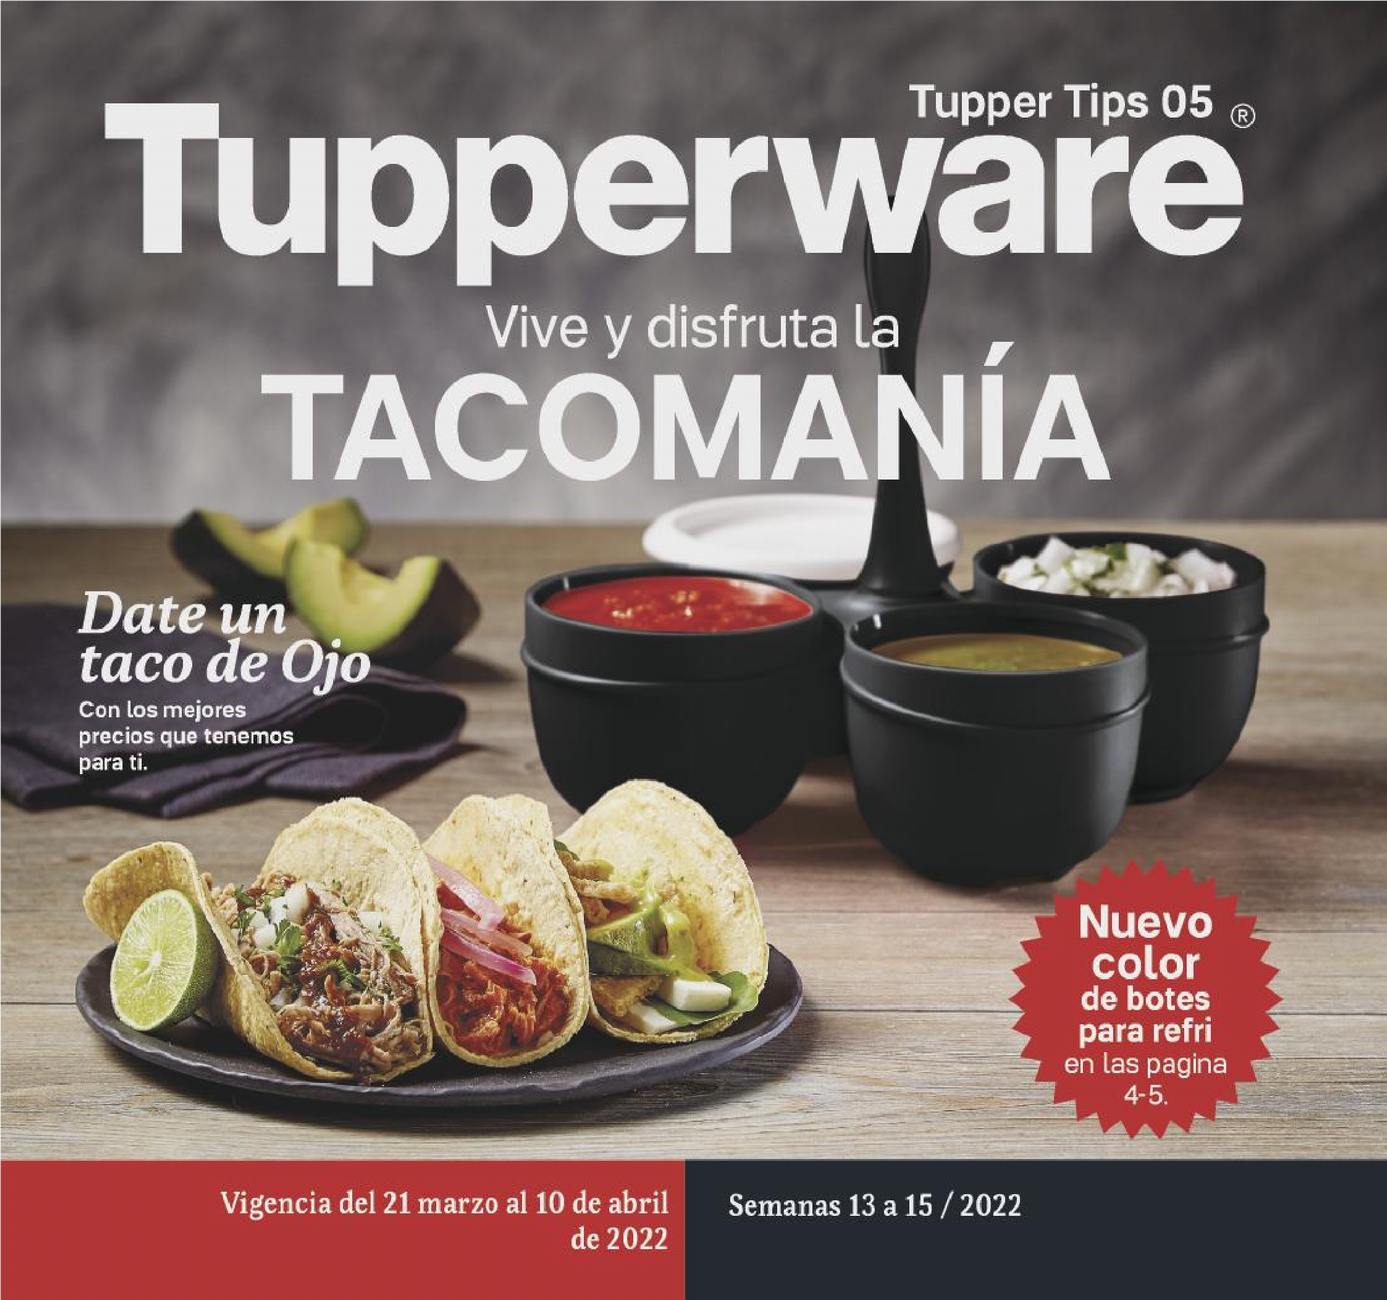 Catálogo Tupperware Tupper Tips 5 2022 México